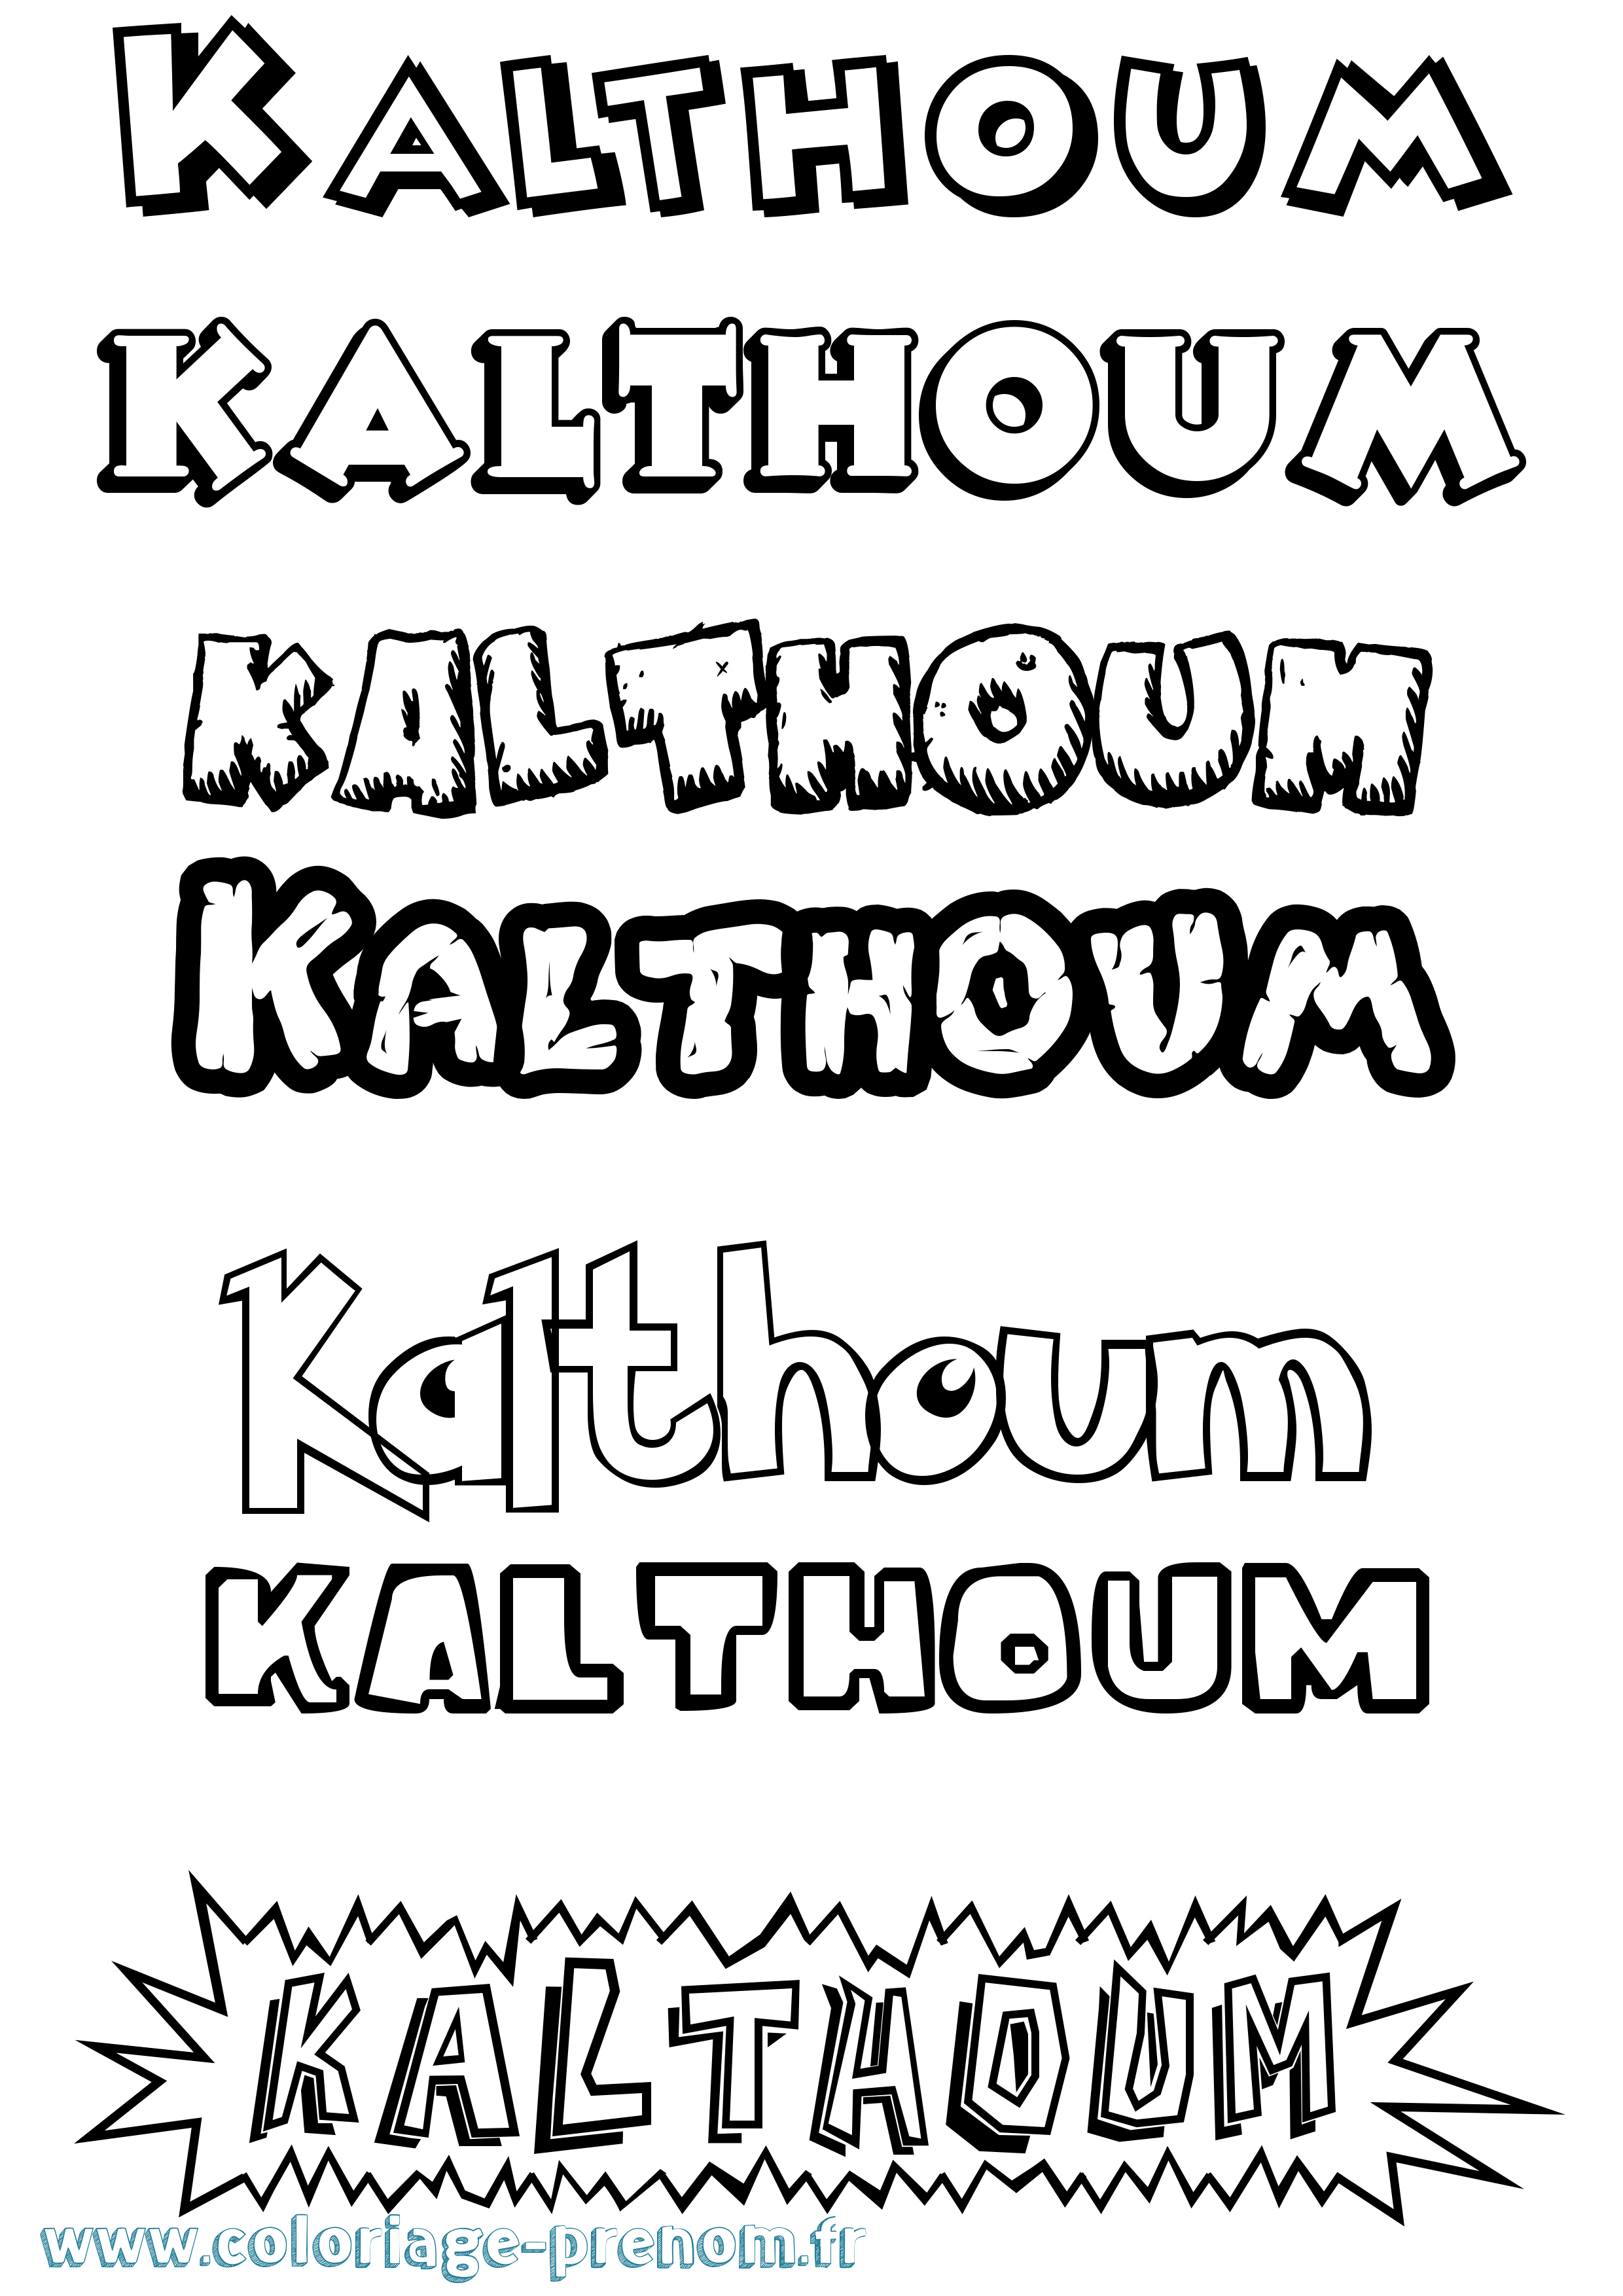 Coloriage prénom Kalthoum Dessin Animé